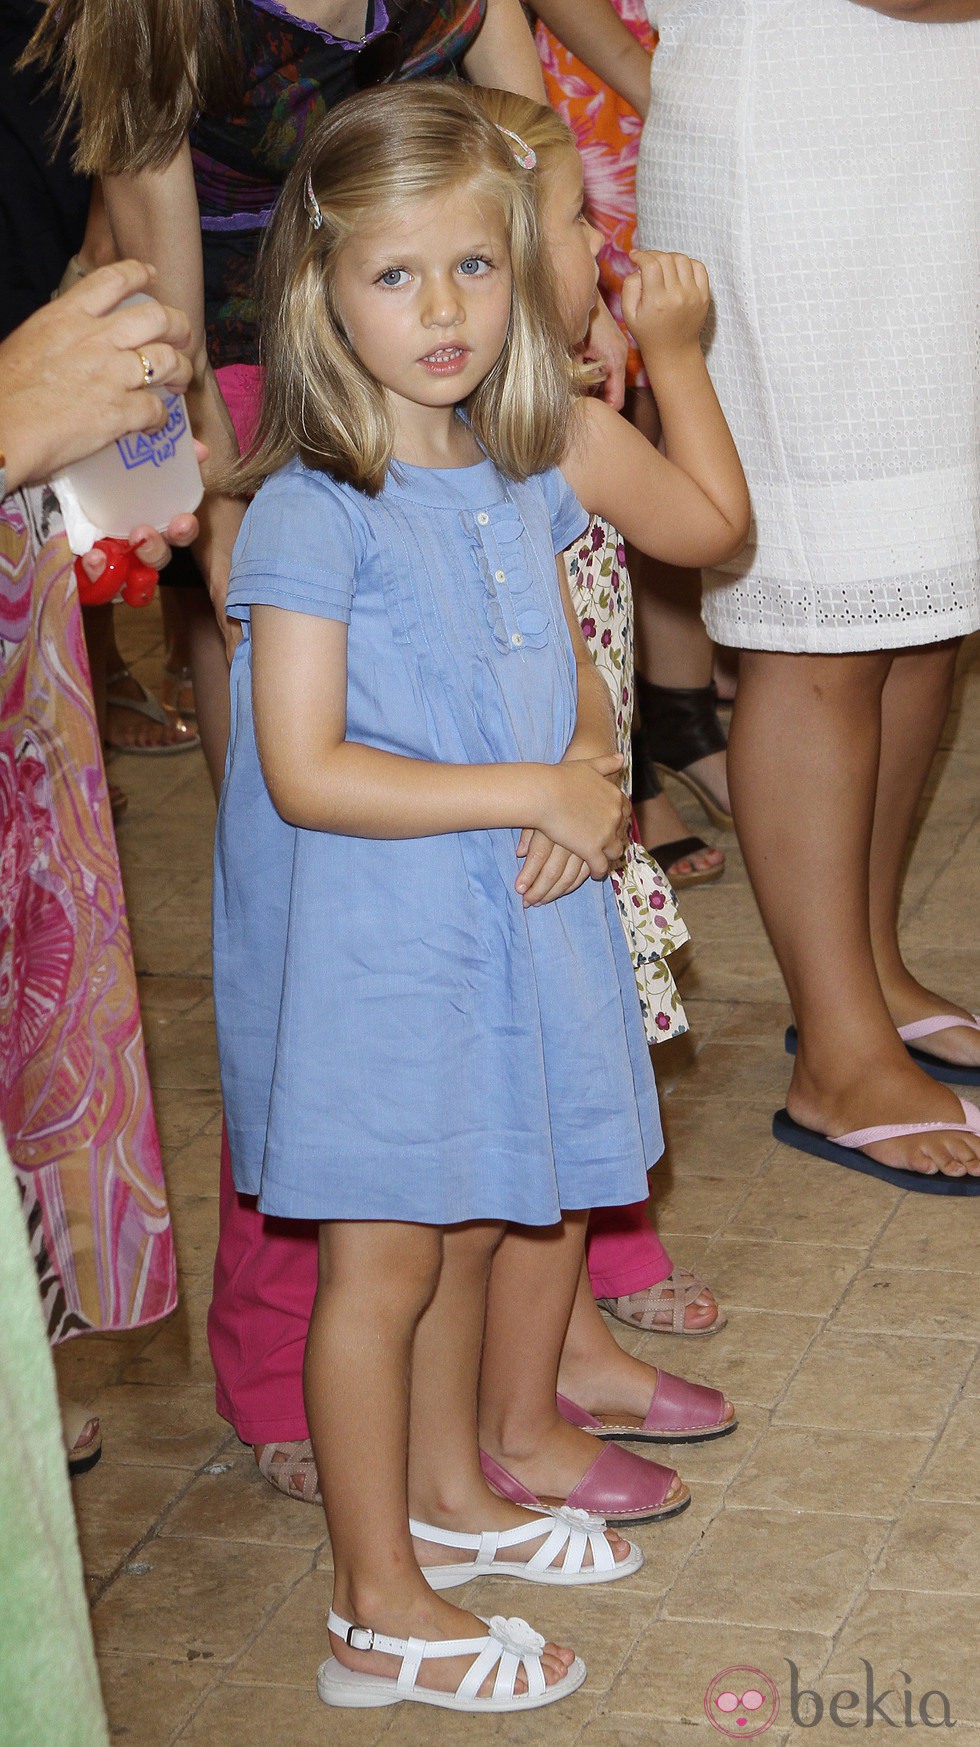 La Infanta Leonor con un vestido azul y sandalias blancas